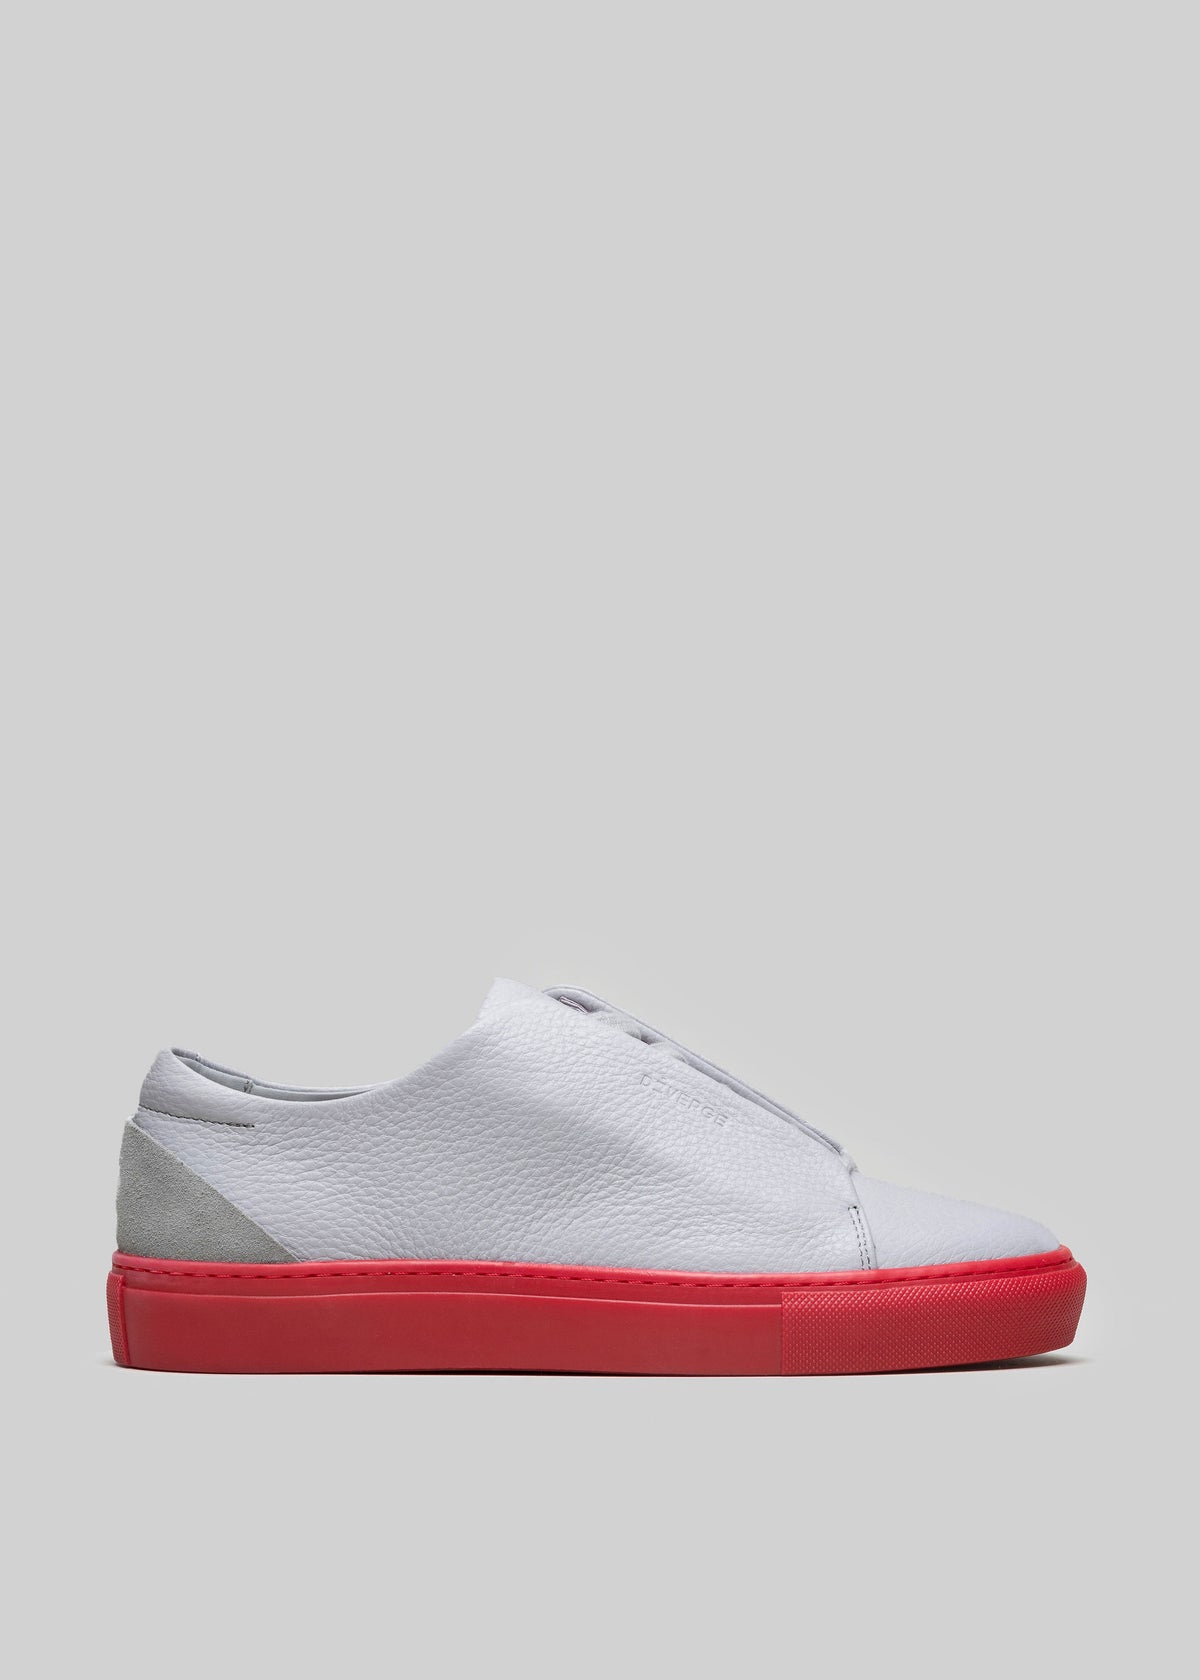 graues und rotes Premium-Leder niedrig sneakers in cleanem Design Seitenansicht